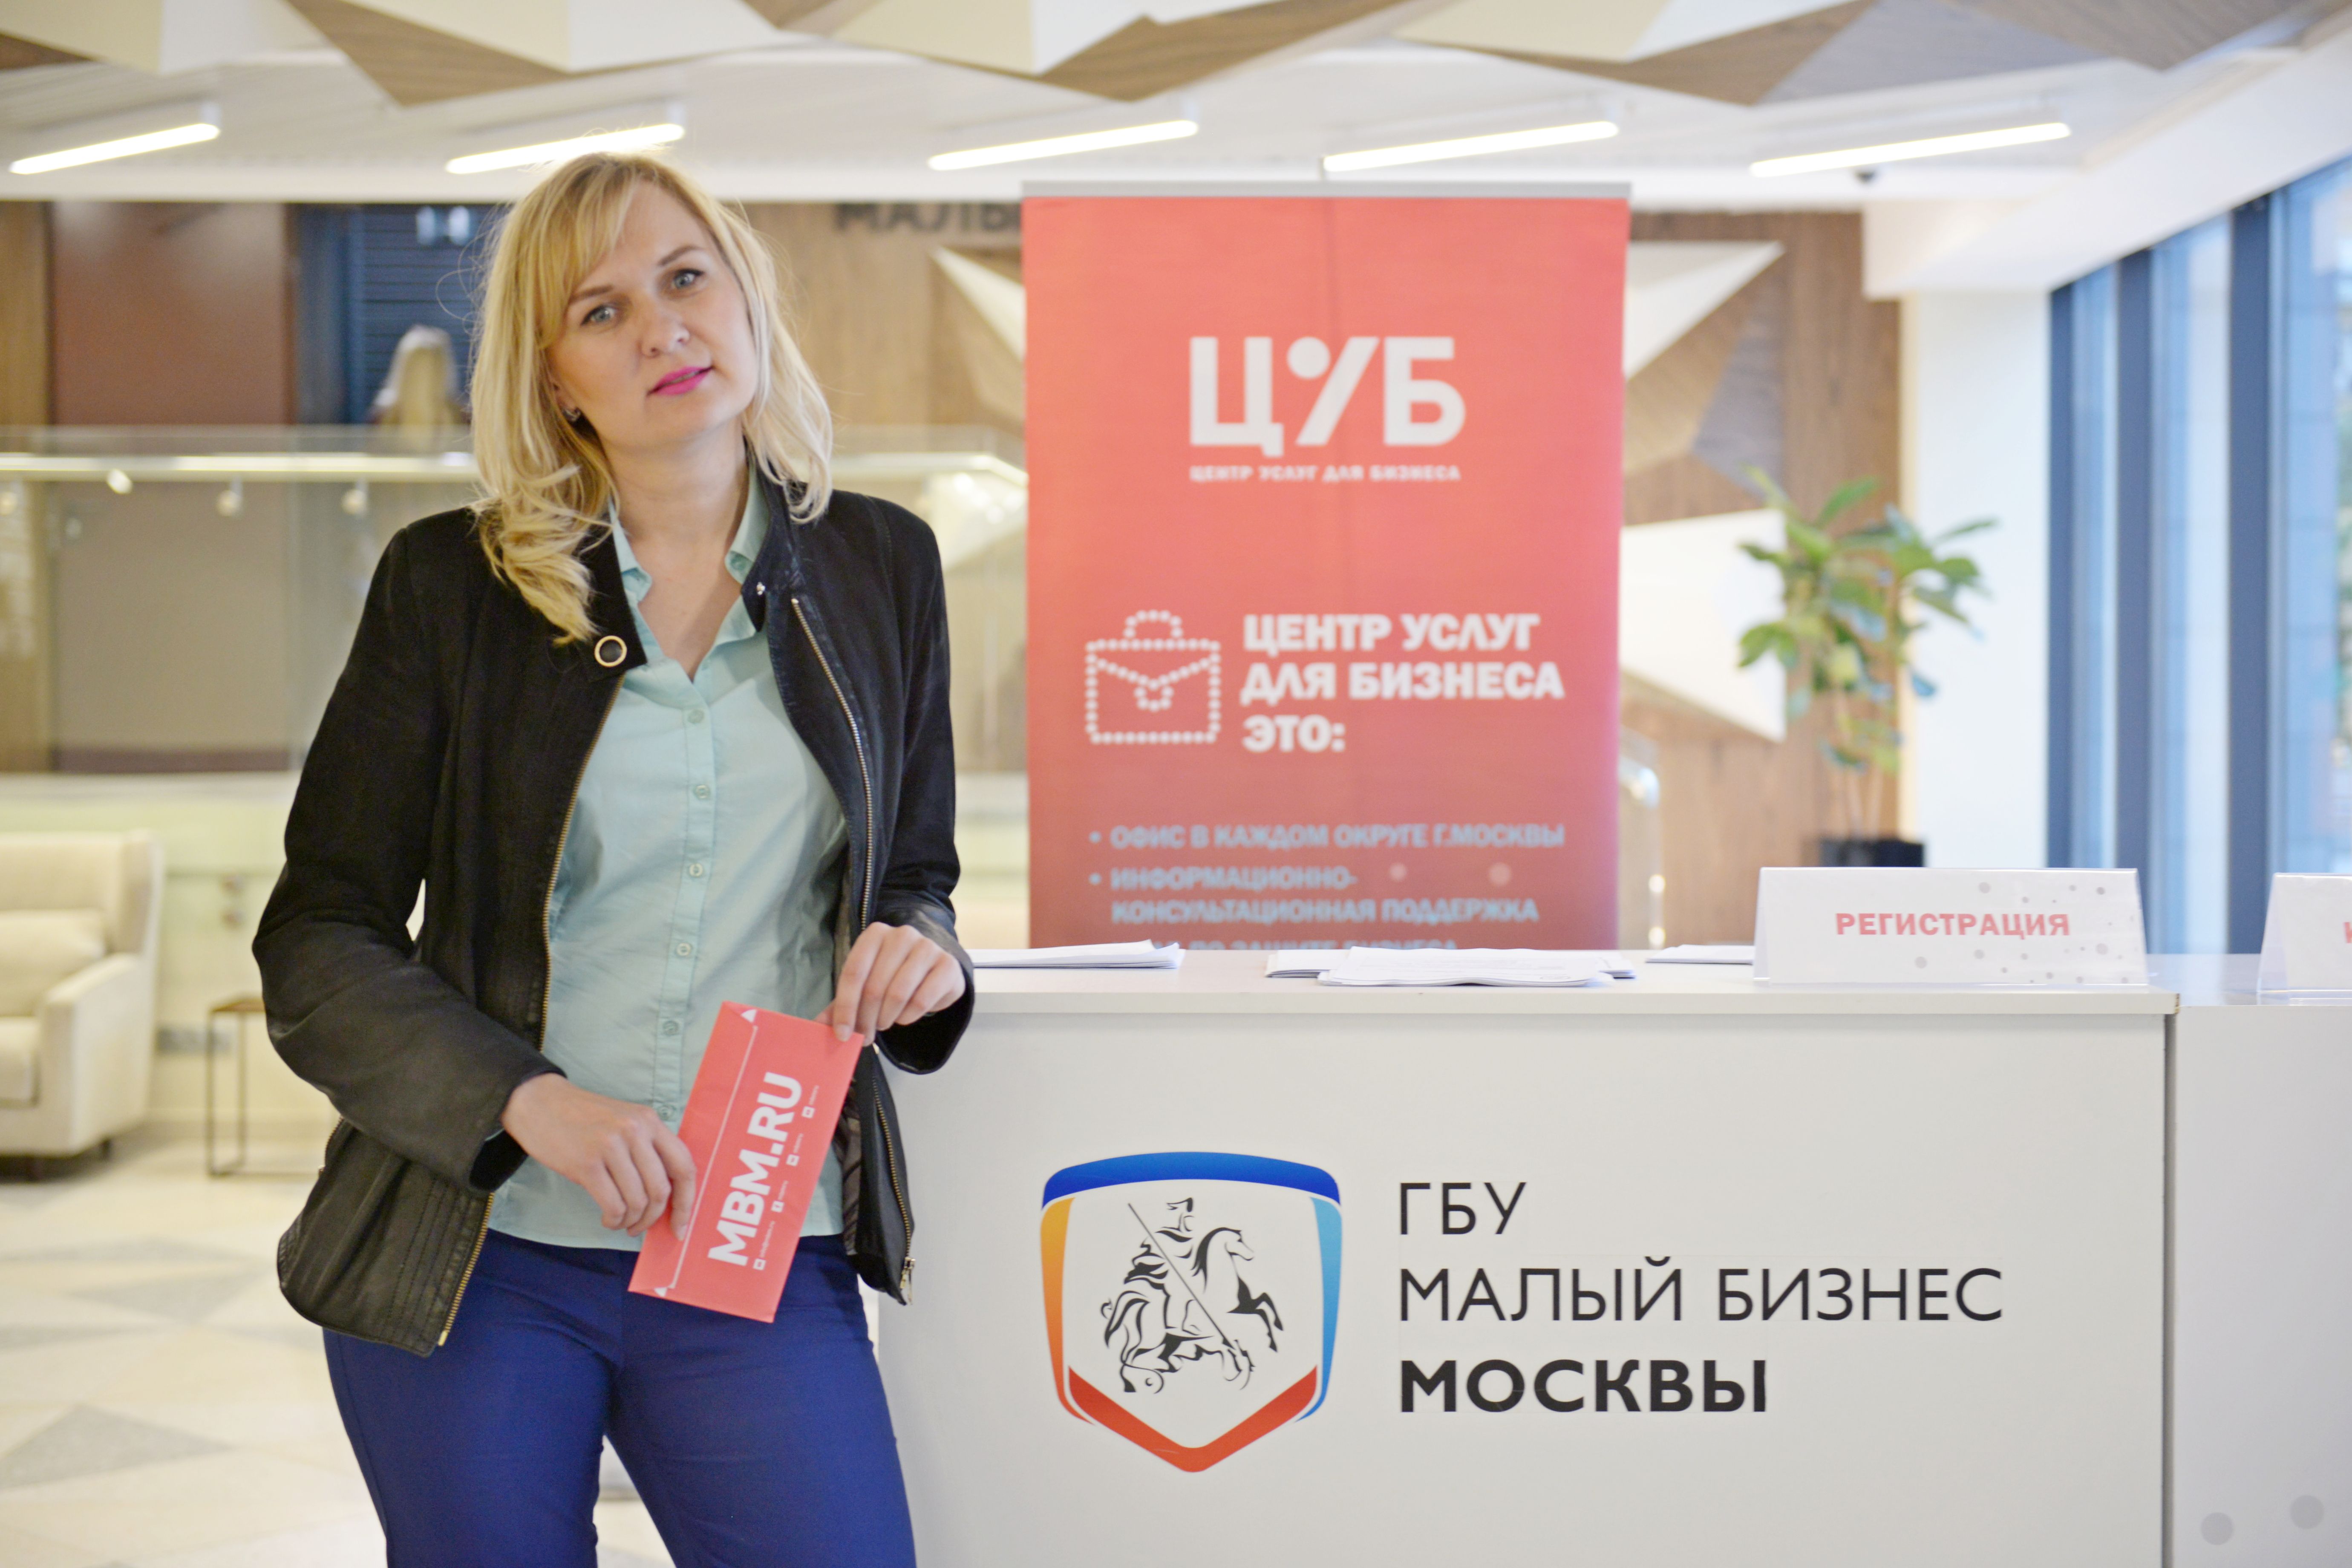 Московским предпринимателям поможет виртуальный бизнес-тренер